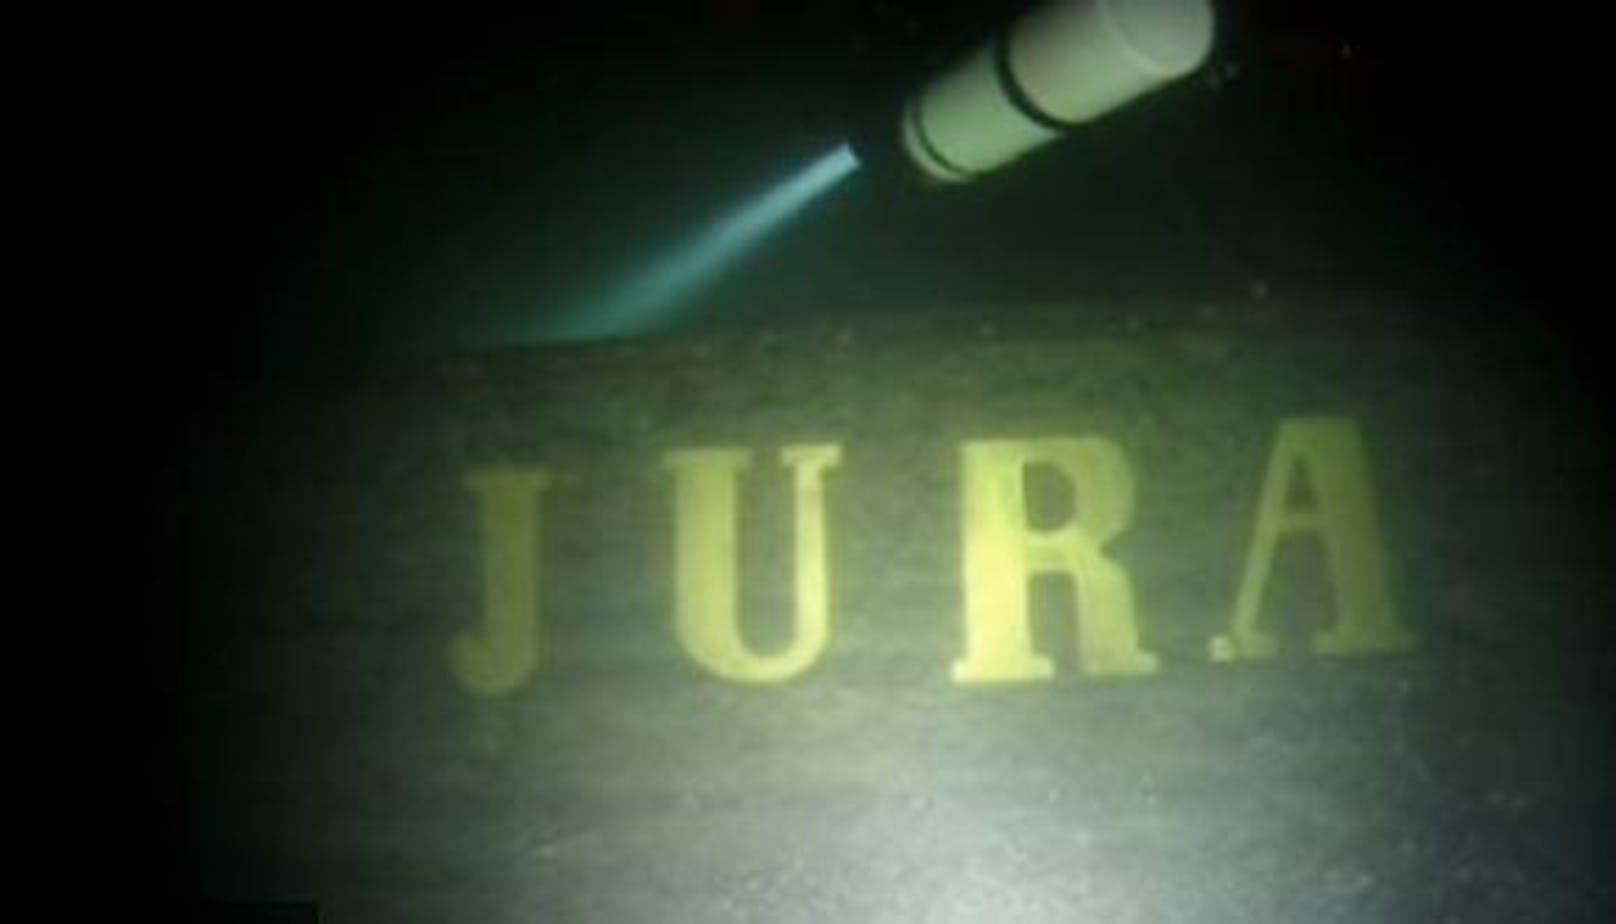 Die "Jura" ist ein 1864 gesunkener Raddampfer.